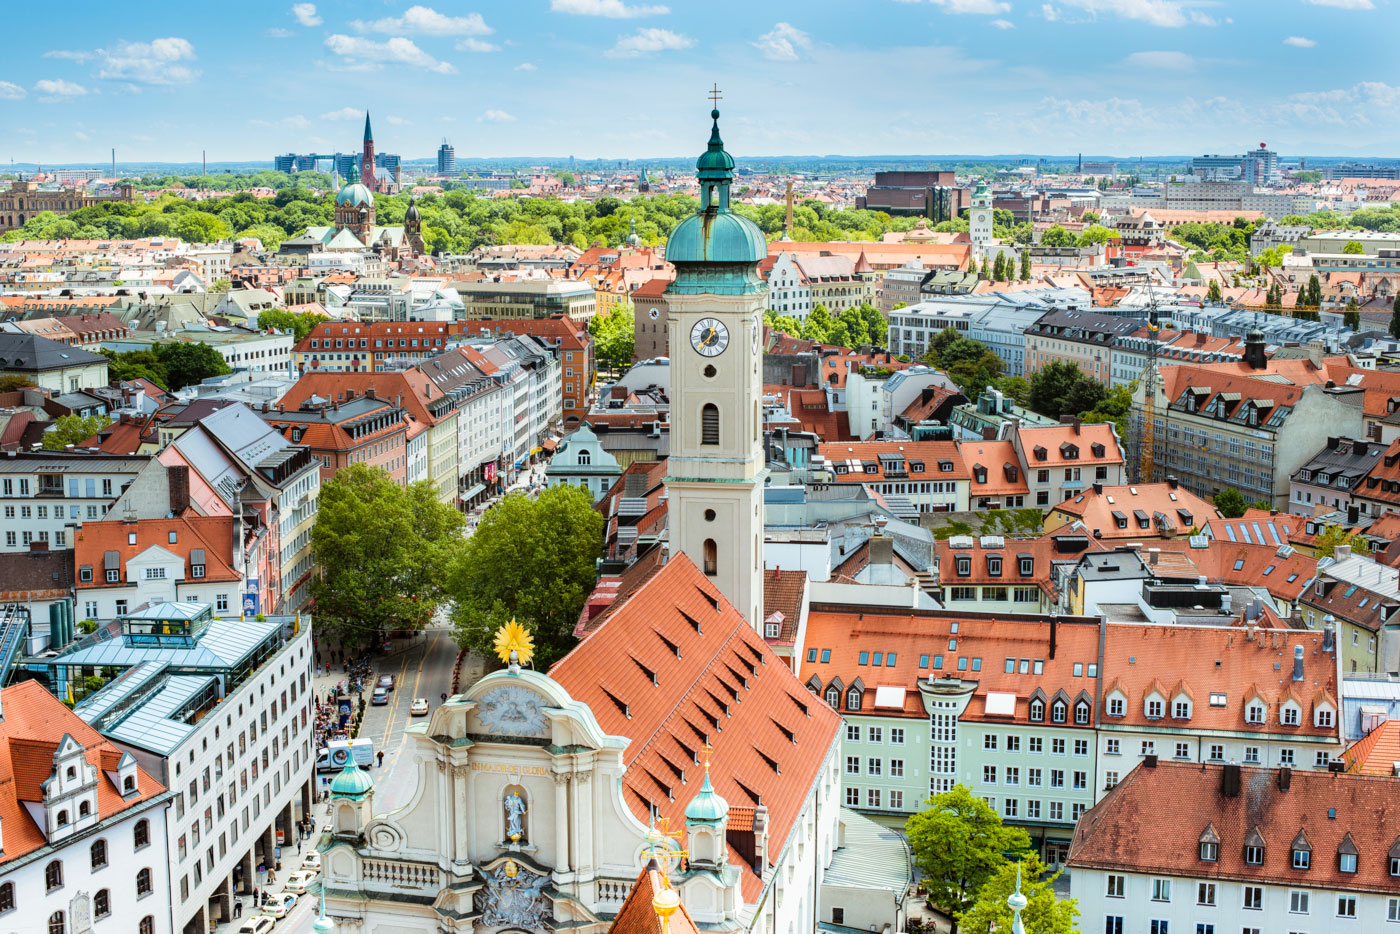 Grupp- och konferensresa München Tyskland med stadsvandring